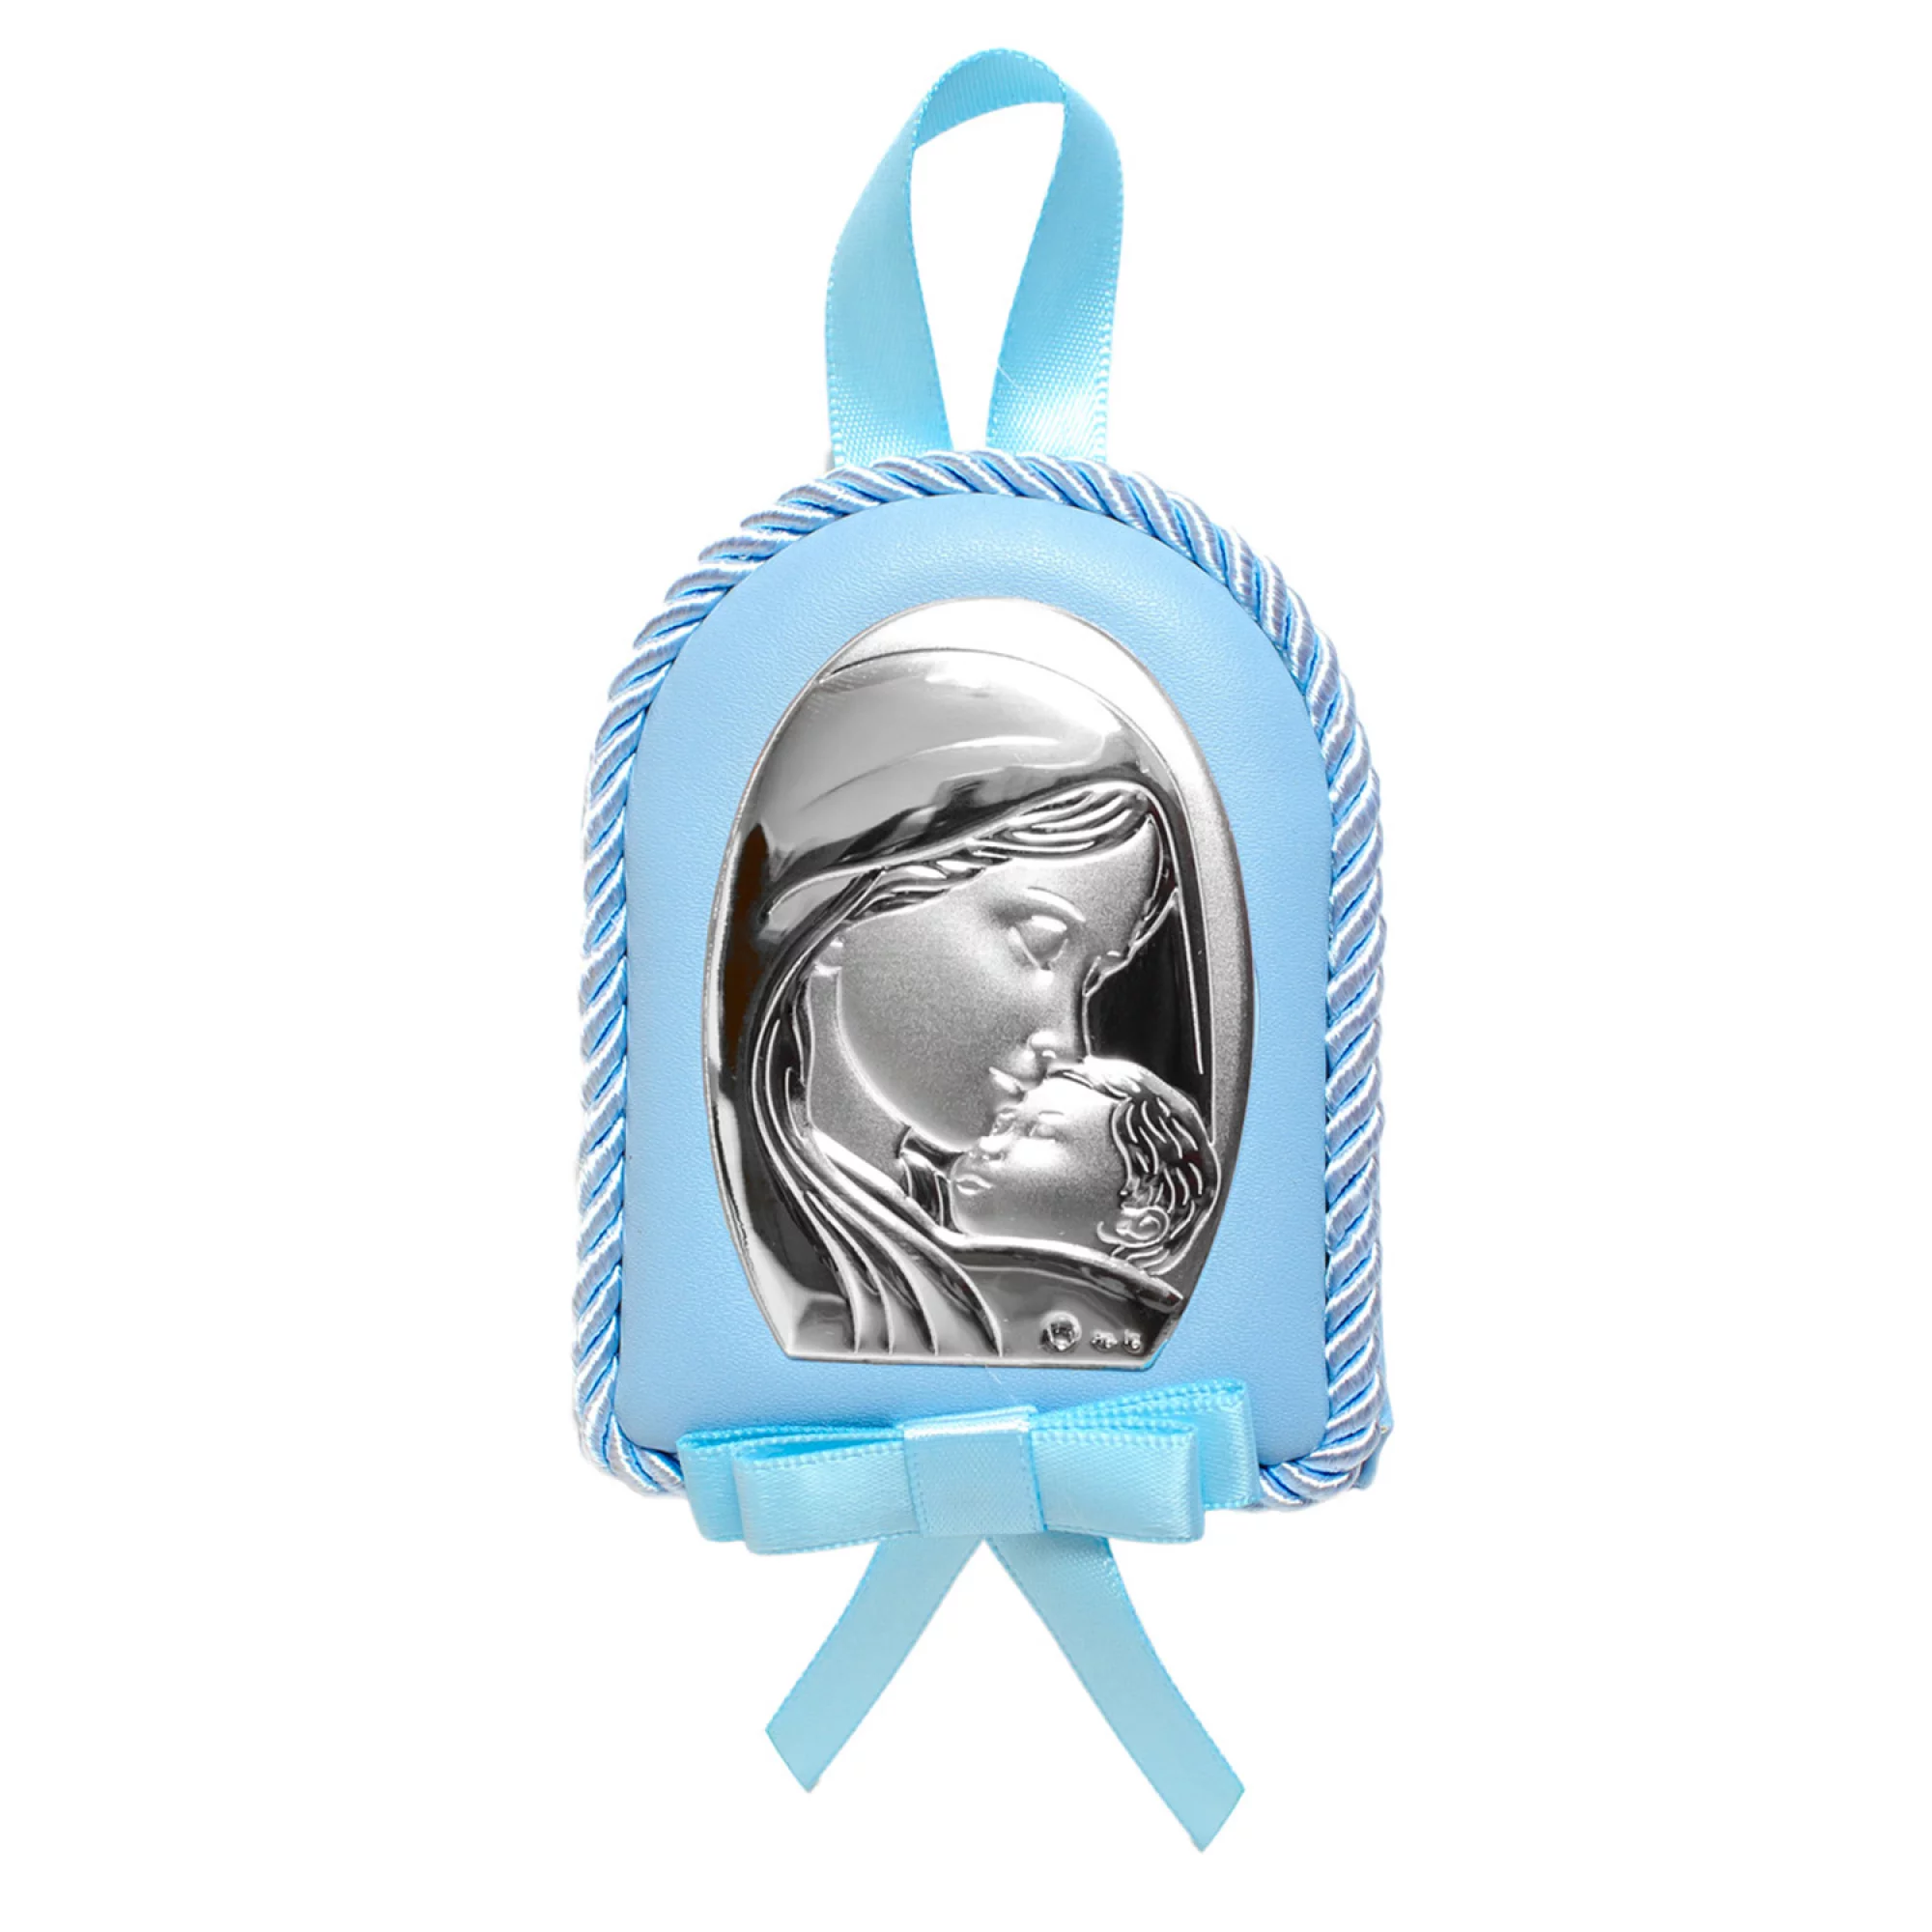 Срібна дитяча іконка "Богородиця з Немовлям" - 1593321 – зображення 1